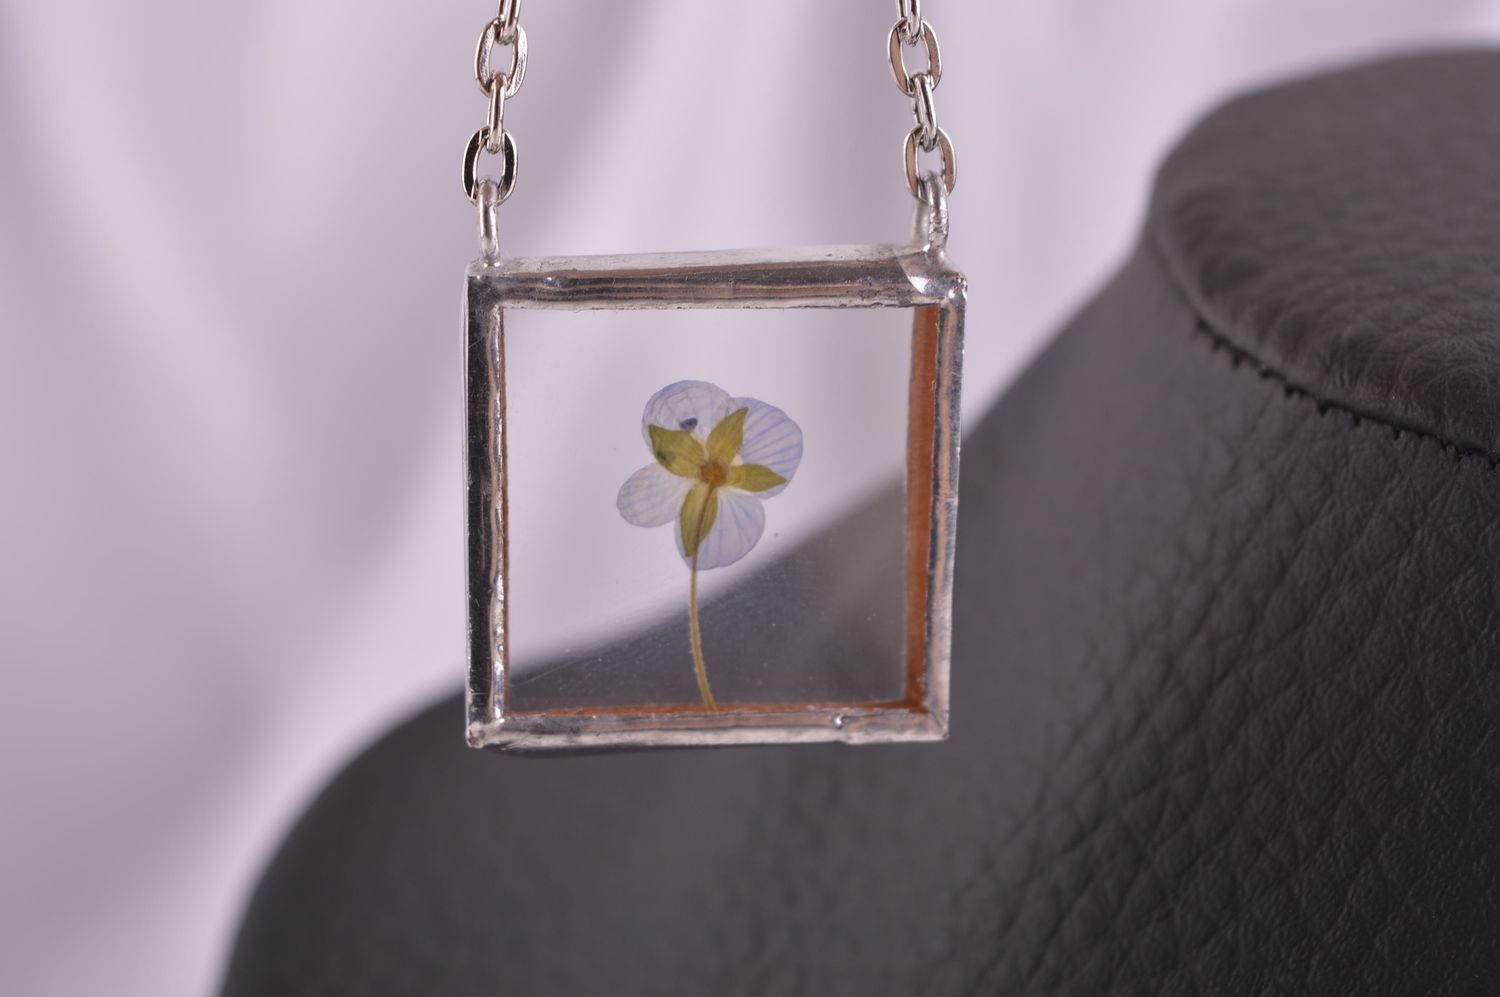 Beautiful handmade glass pendant artisan jewelry glass art ideas small gifts photo 2